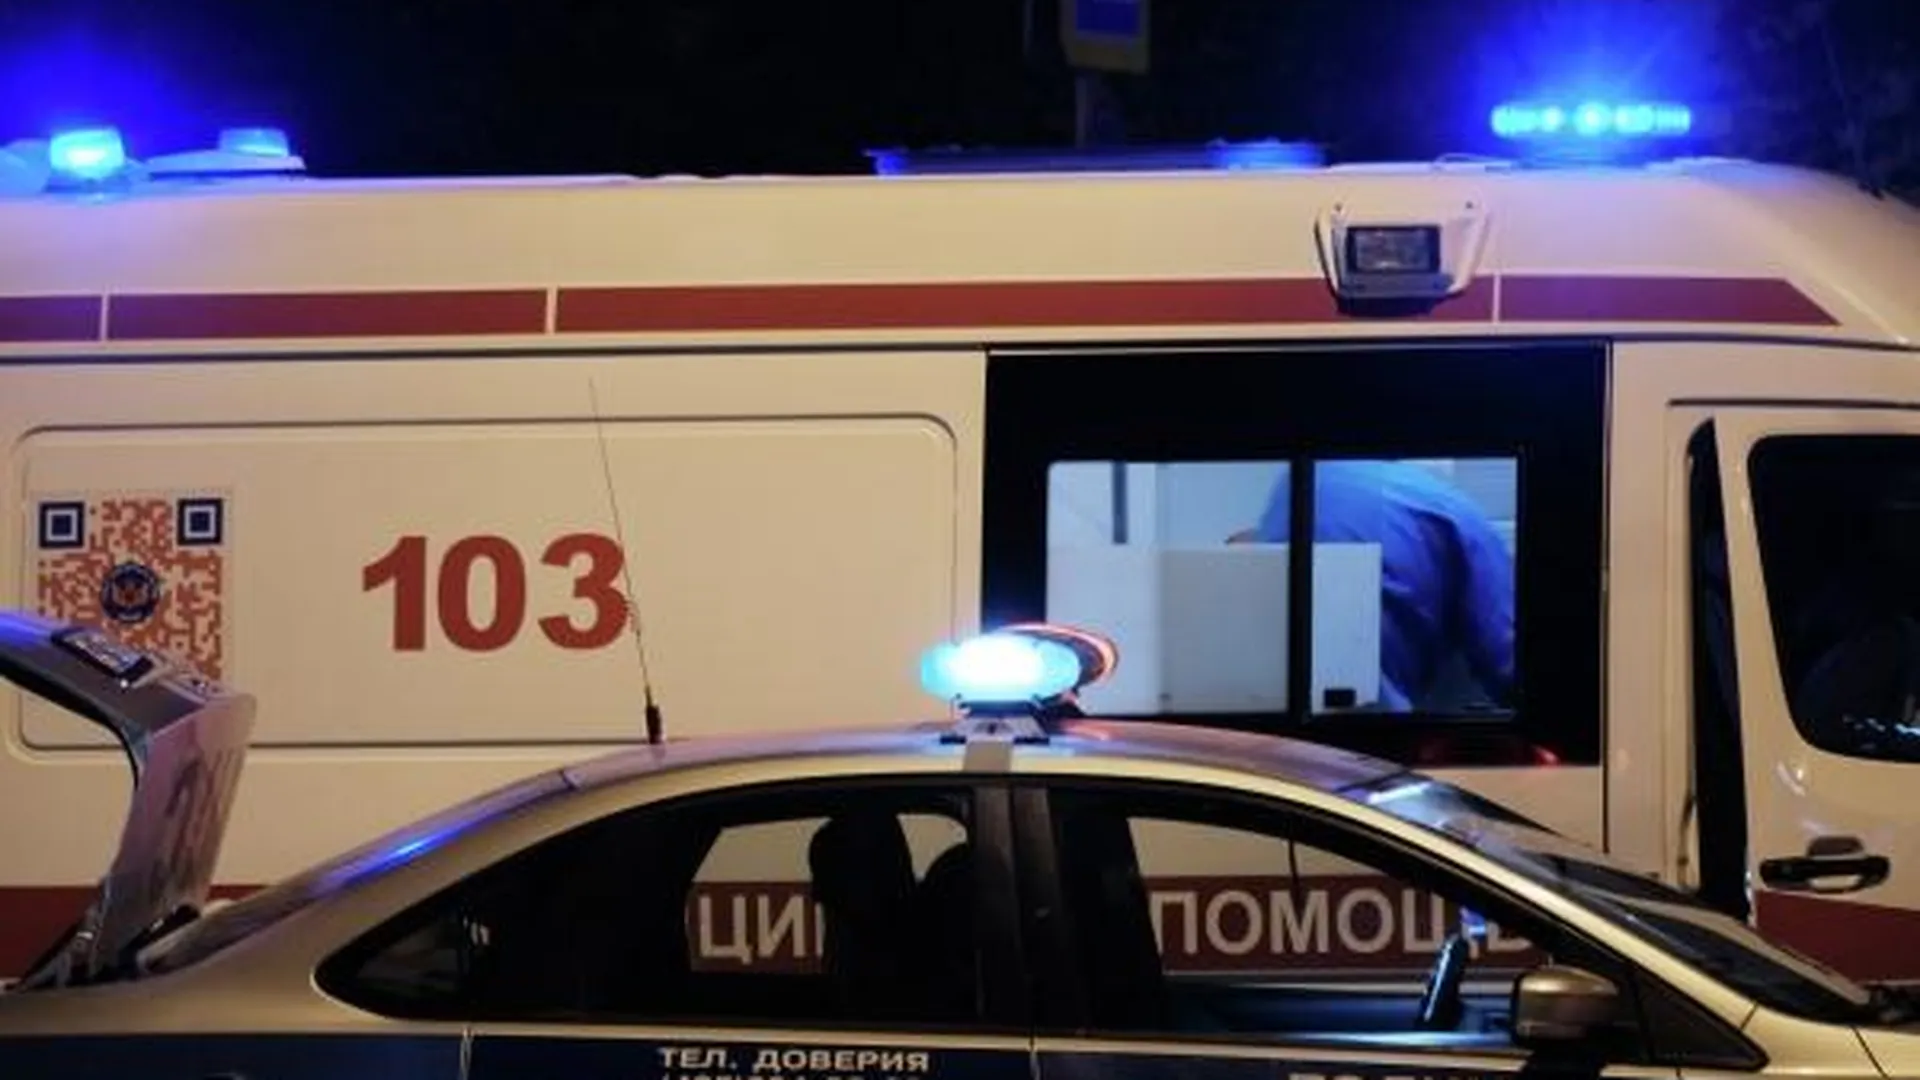 Самодельная граната взорвалась в квартире в Ликино-Дулево